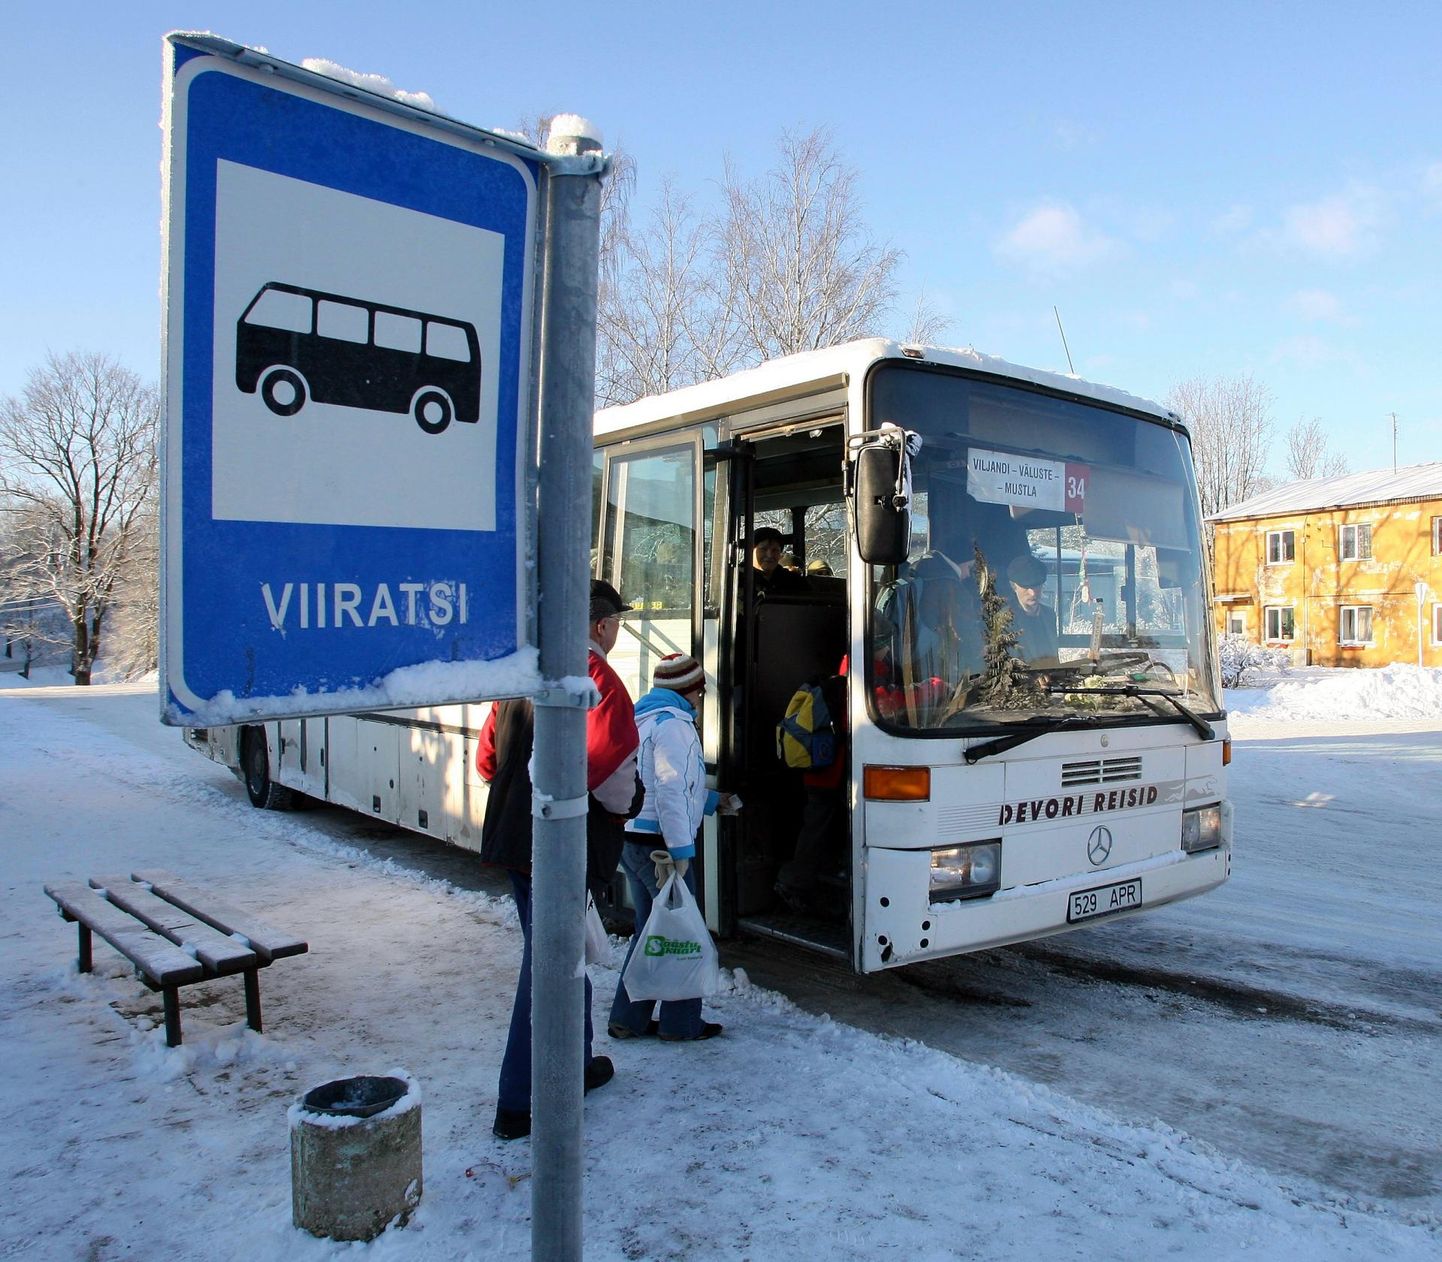 Viljandi vallas on mitu samanimelist bussipeatust, näiteks Viiratsit on kaks ning transpordiameti sõnul tuleb vallal need ära muuta nii, et nimed ei korduks.